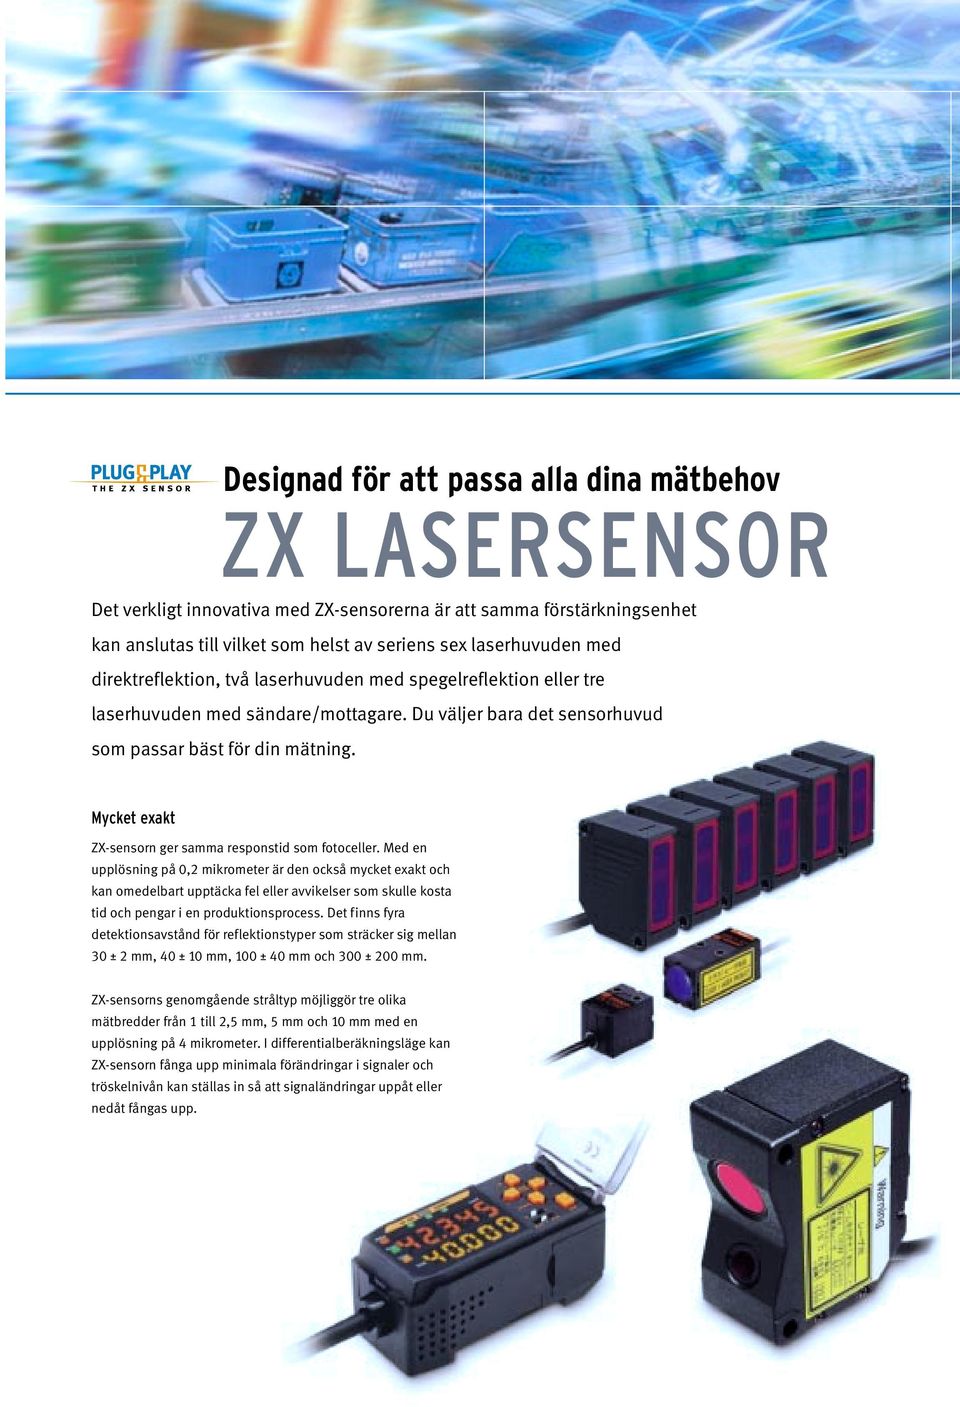 Mycket exakt ZX-sensorn ger samma responstid som fotoceller.